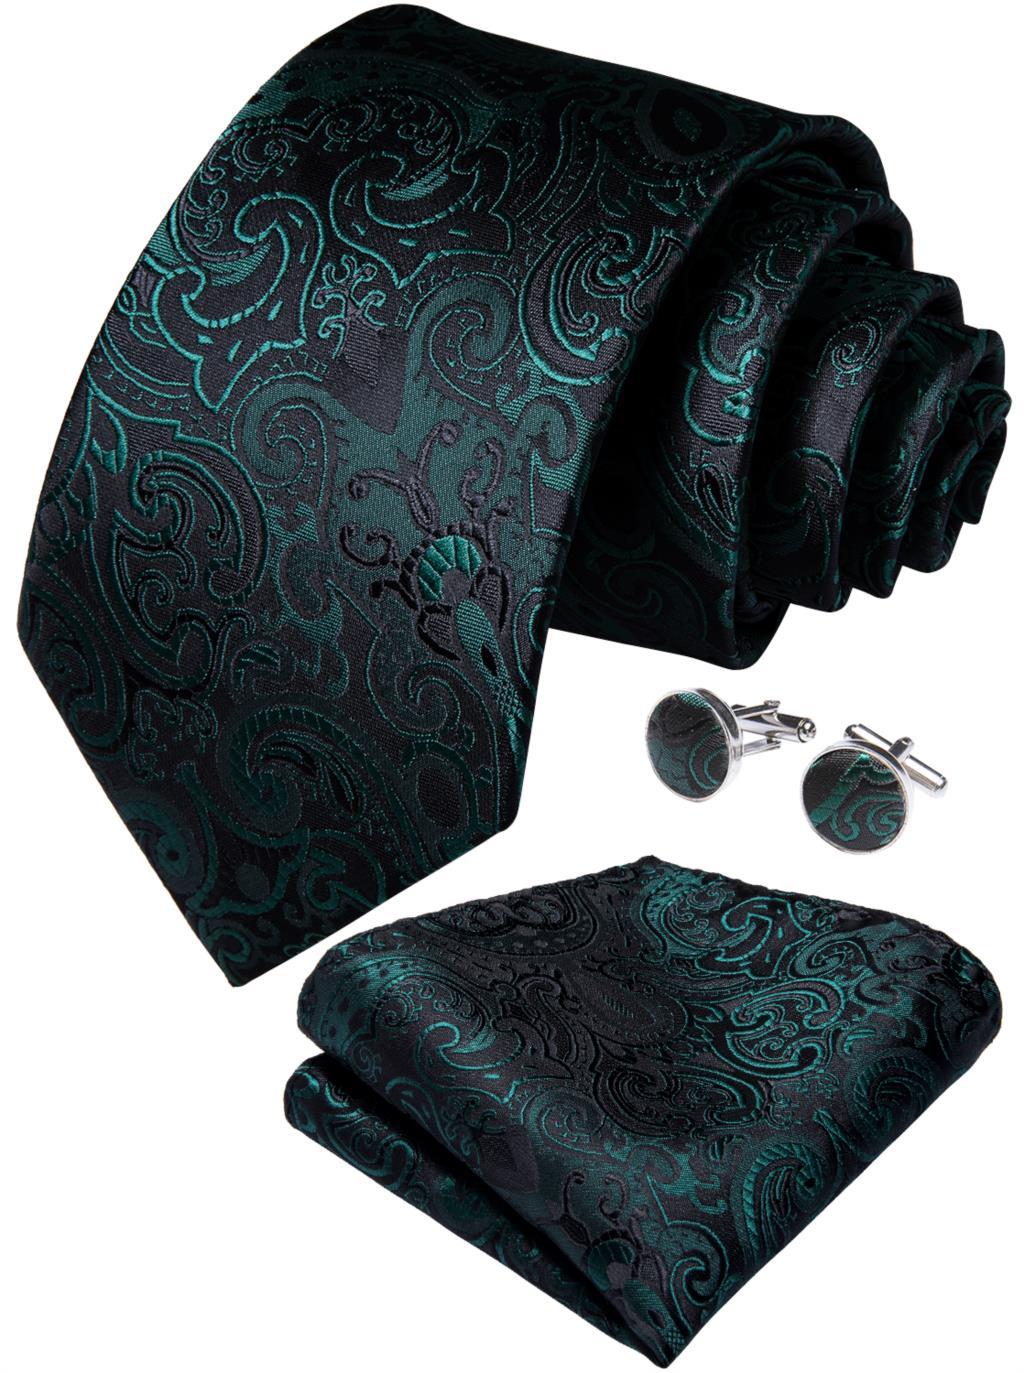 Изображение товара: Галстук мужской DiBanGu, зеленый, черный галстук с цветочным рисунком, дизайнерский комплект, платок, запонки, модный галстук для бизнеса, свадьбы, вечеринки, MJ-7177